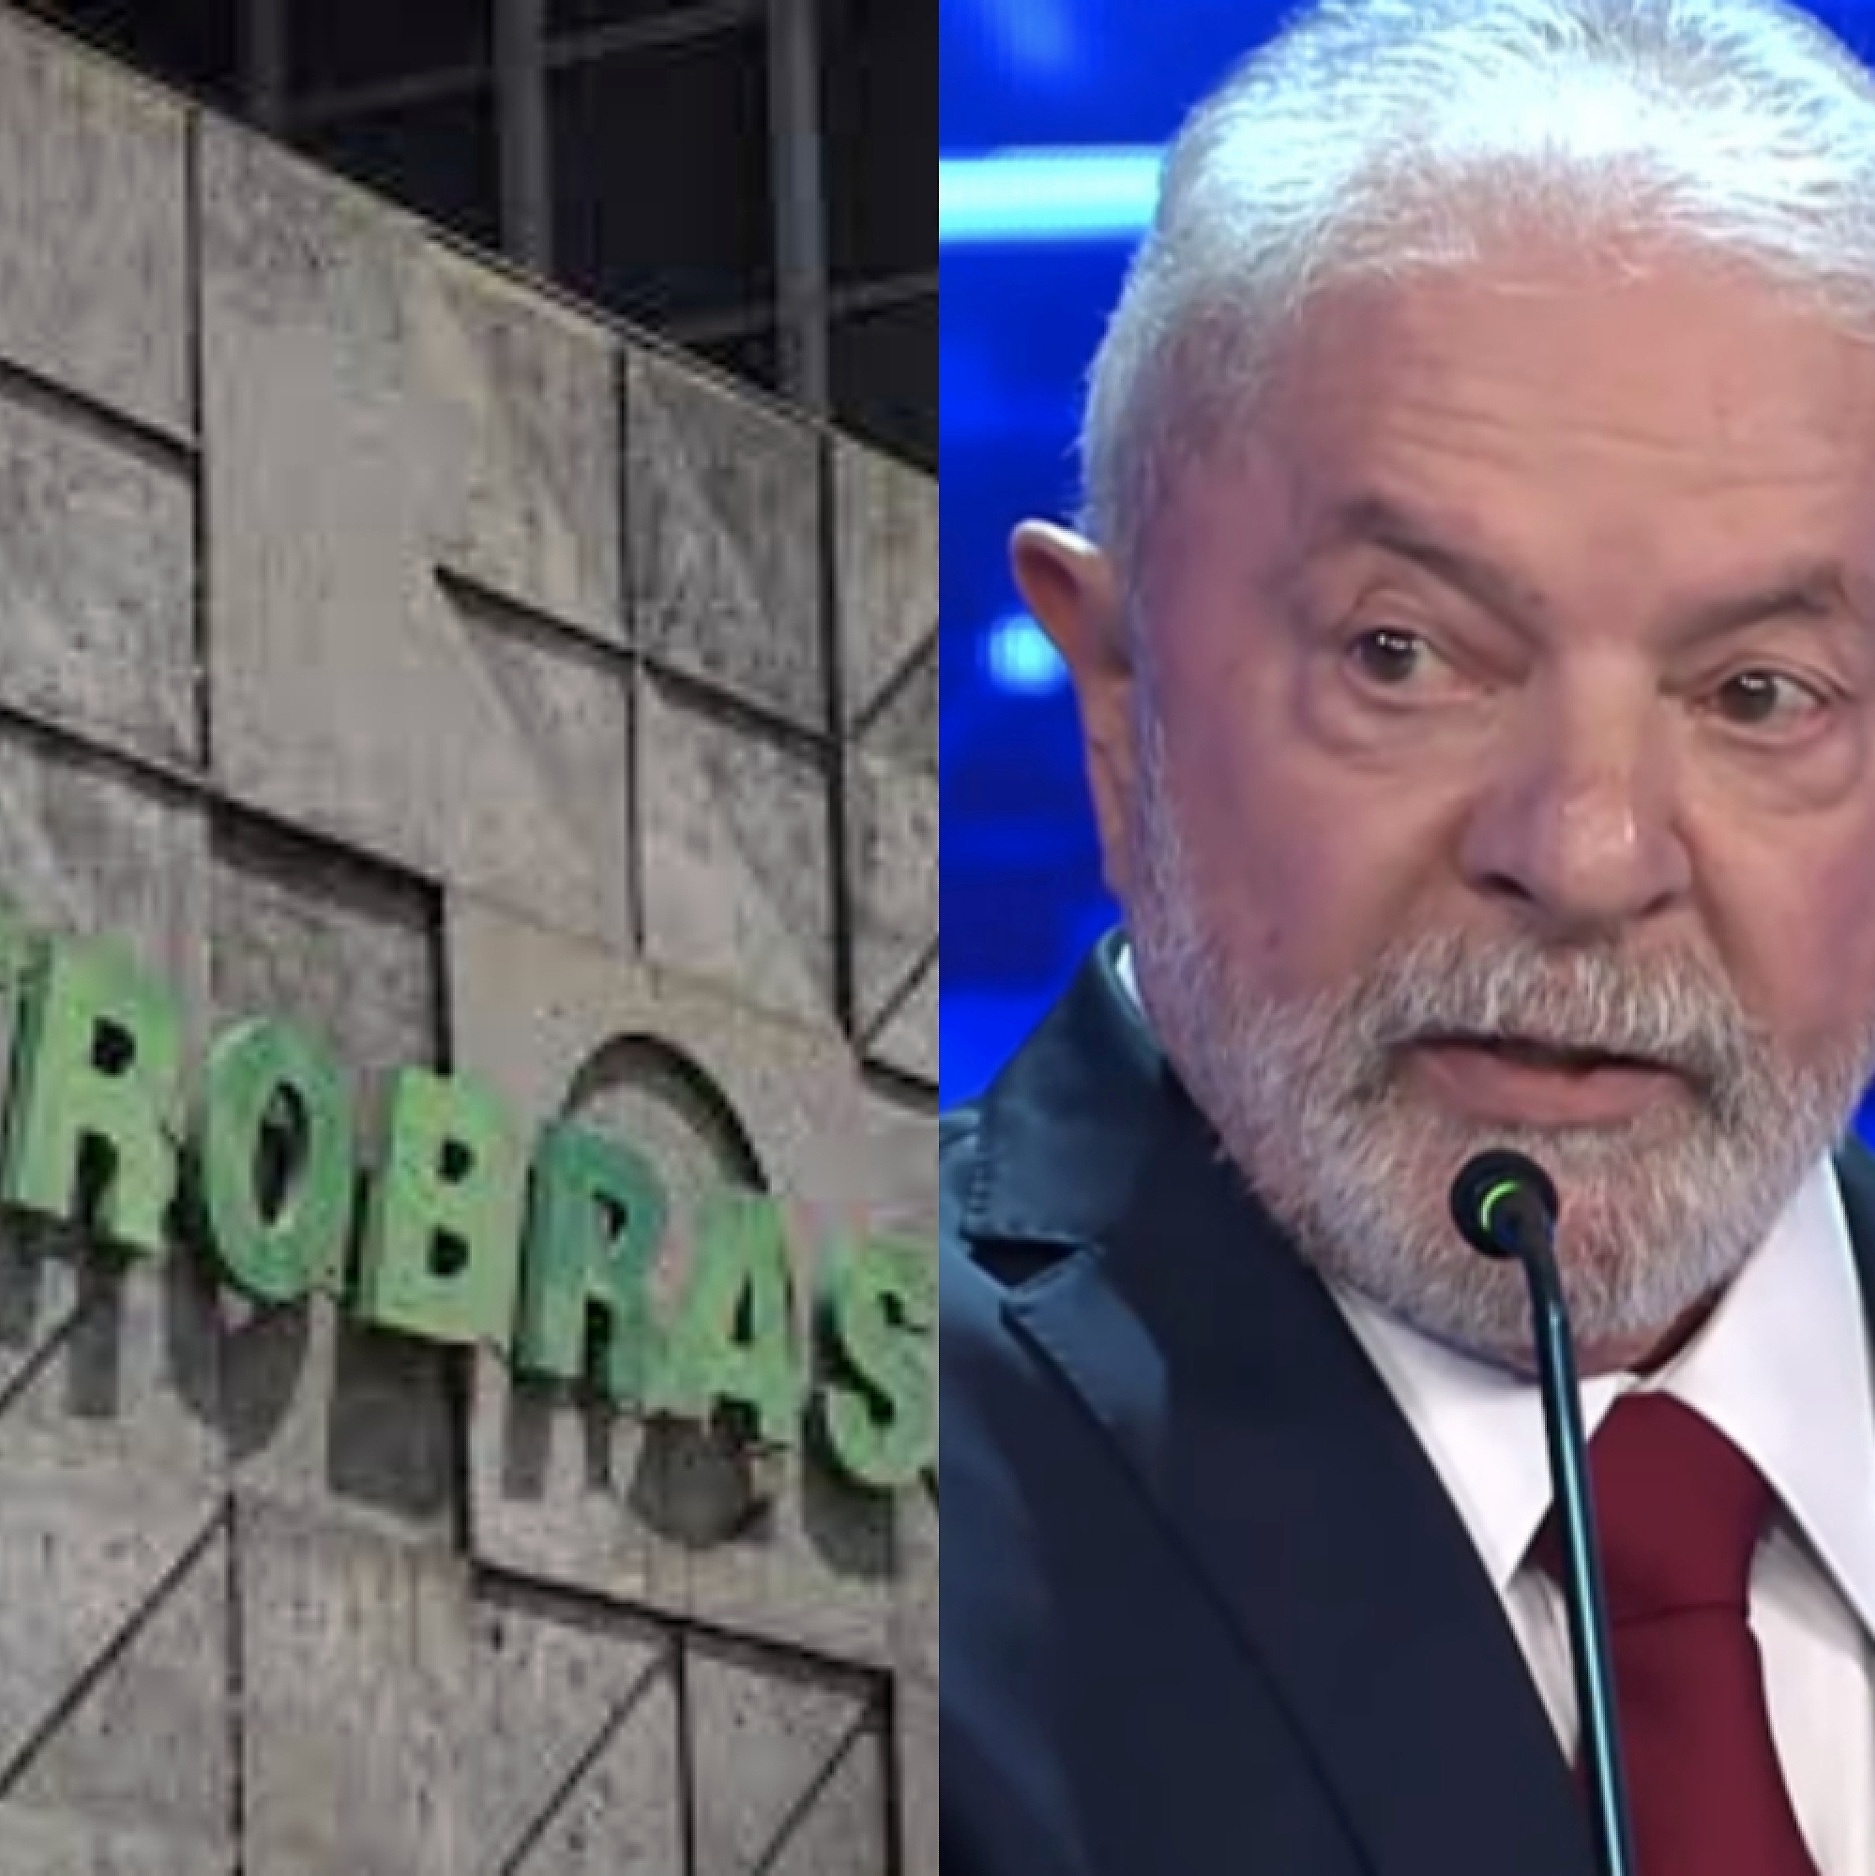 Para quem (não) quer só saber de Copa do Mundo: Inflação à vista, a equipe  de Lula, os dividendos da Petrobras e as notícias que mexem com o seu bolso  - Seu